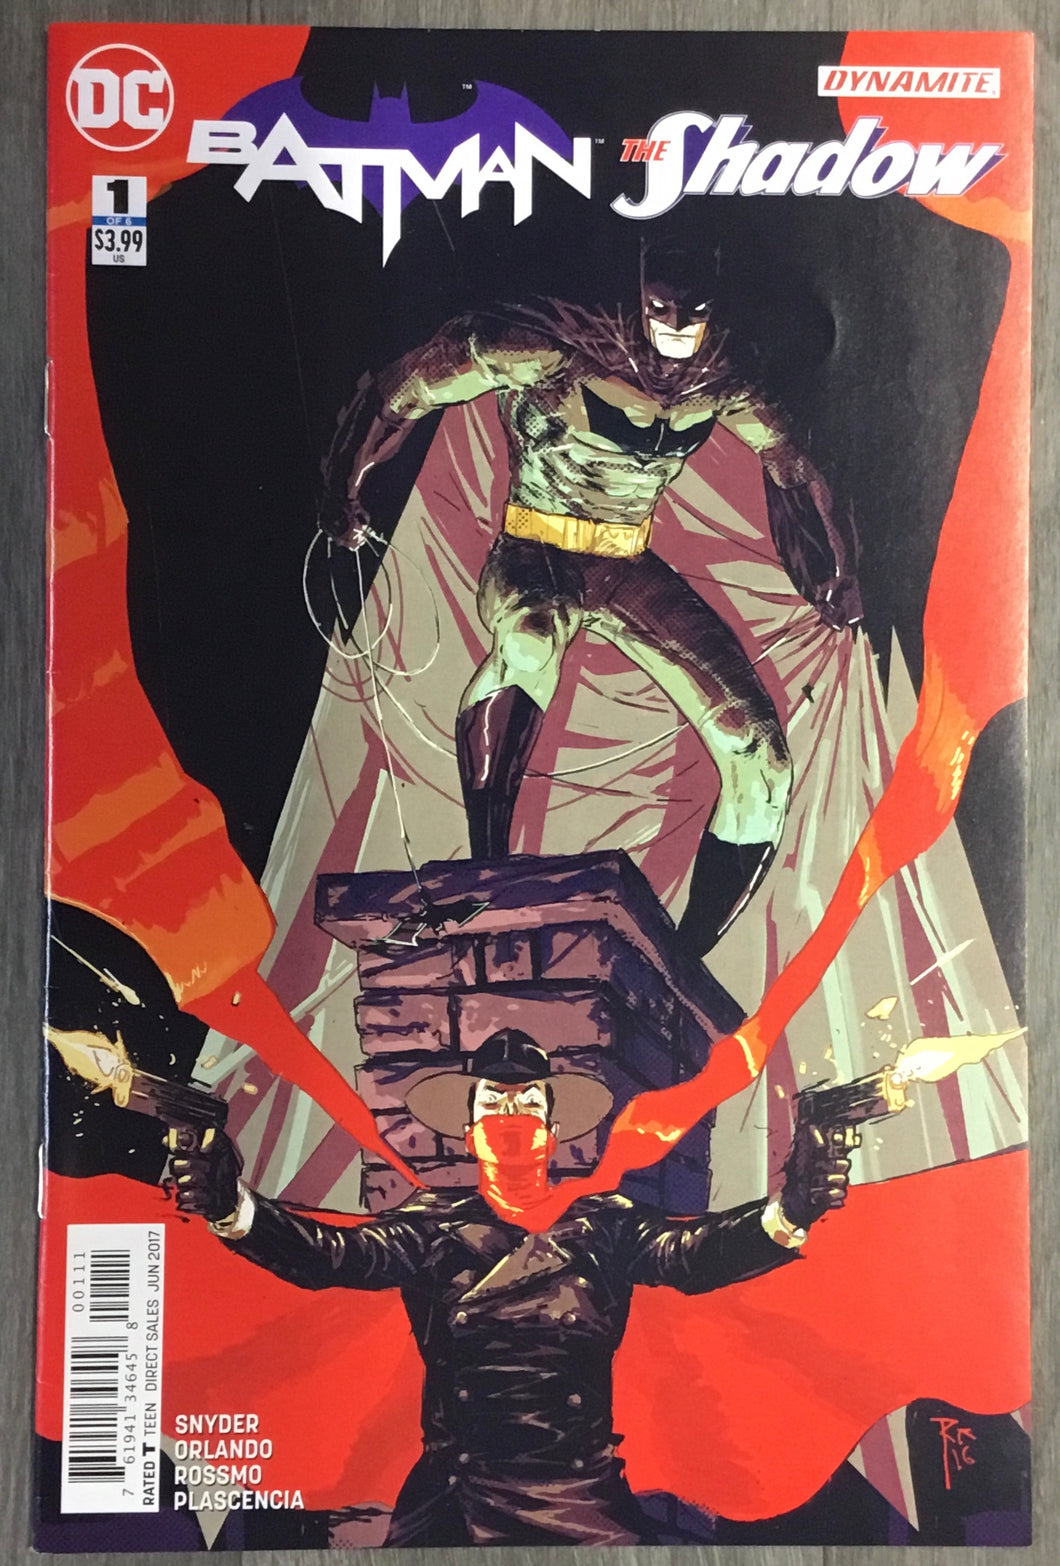 Batman/Shadow No. #1 2017 DC Comics